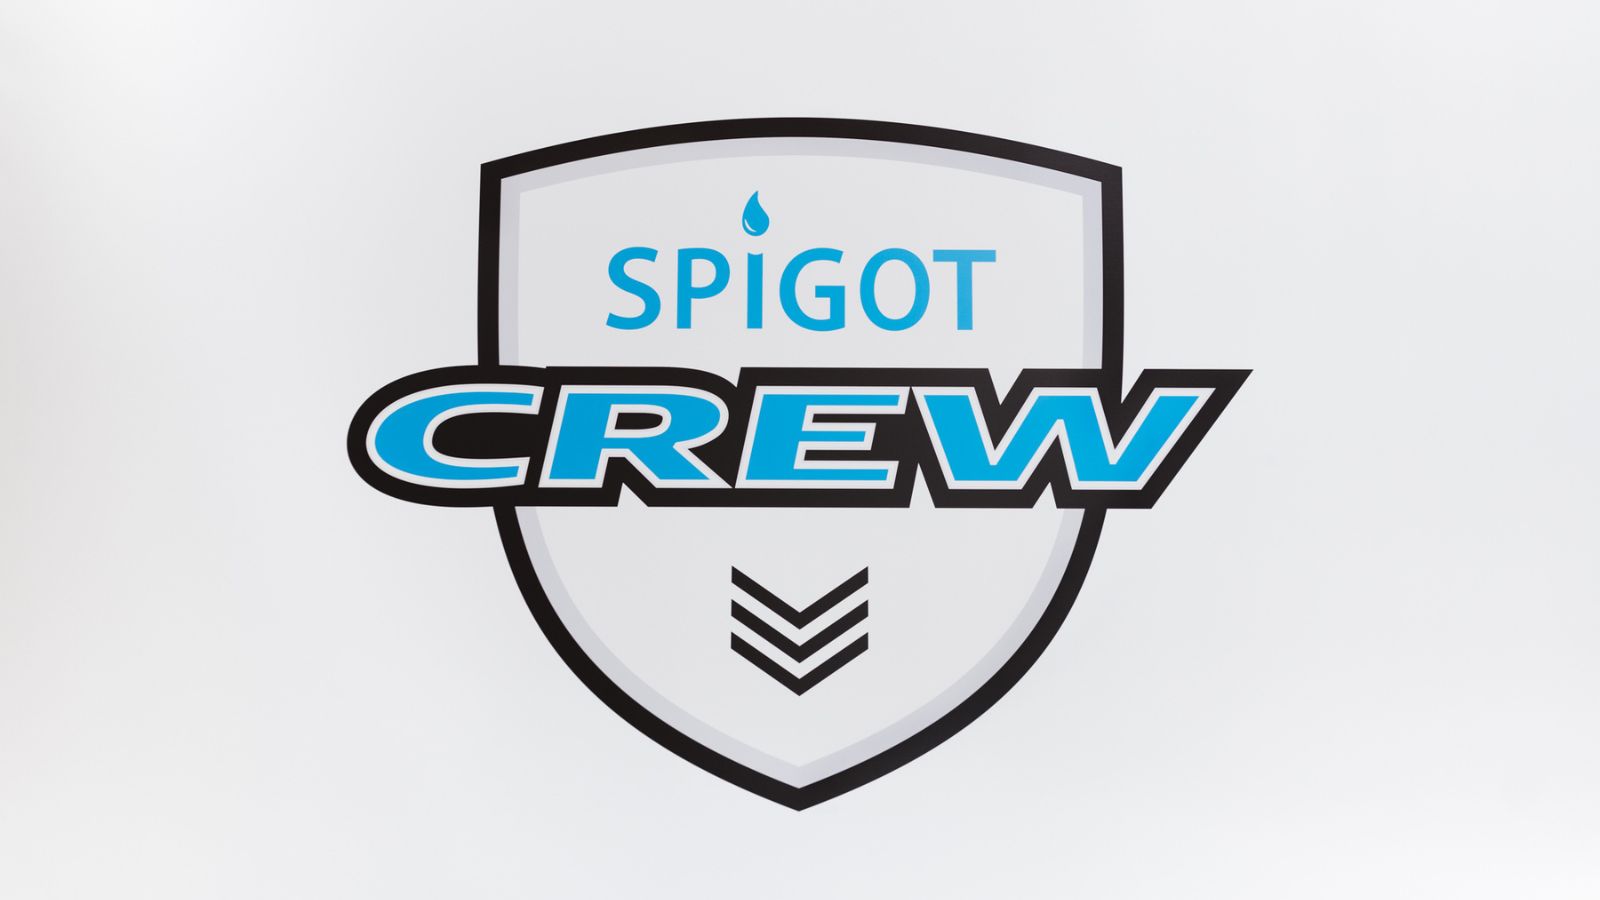 Spigot Crew talon tekniikka